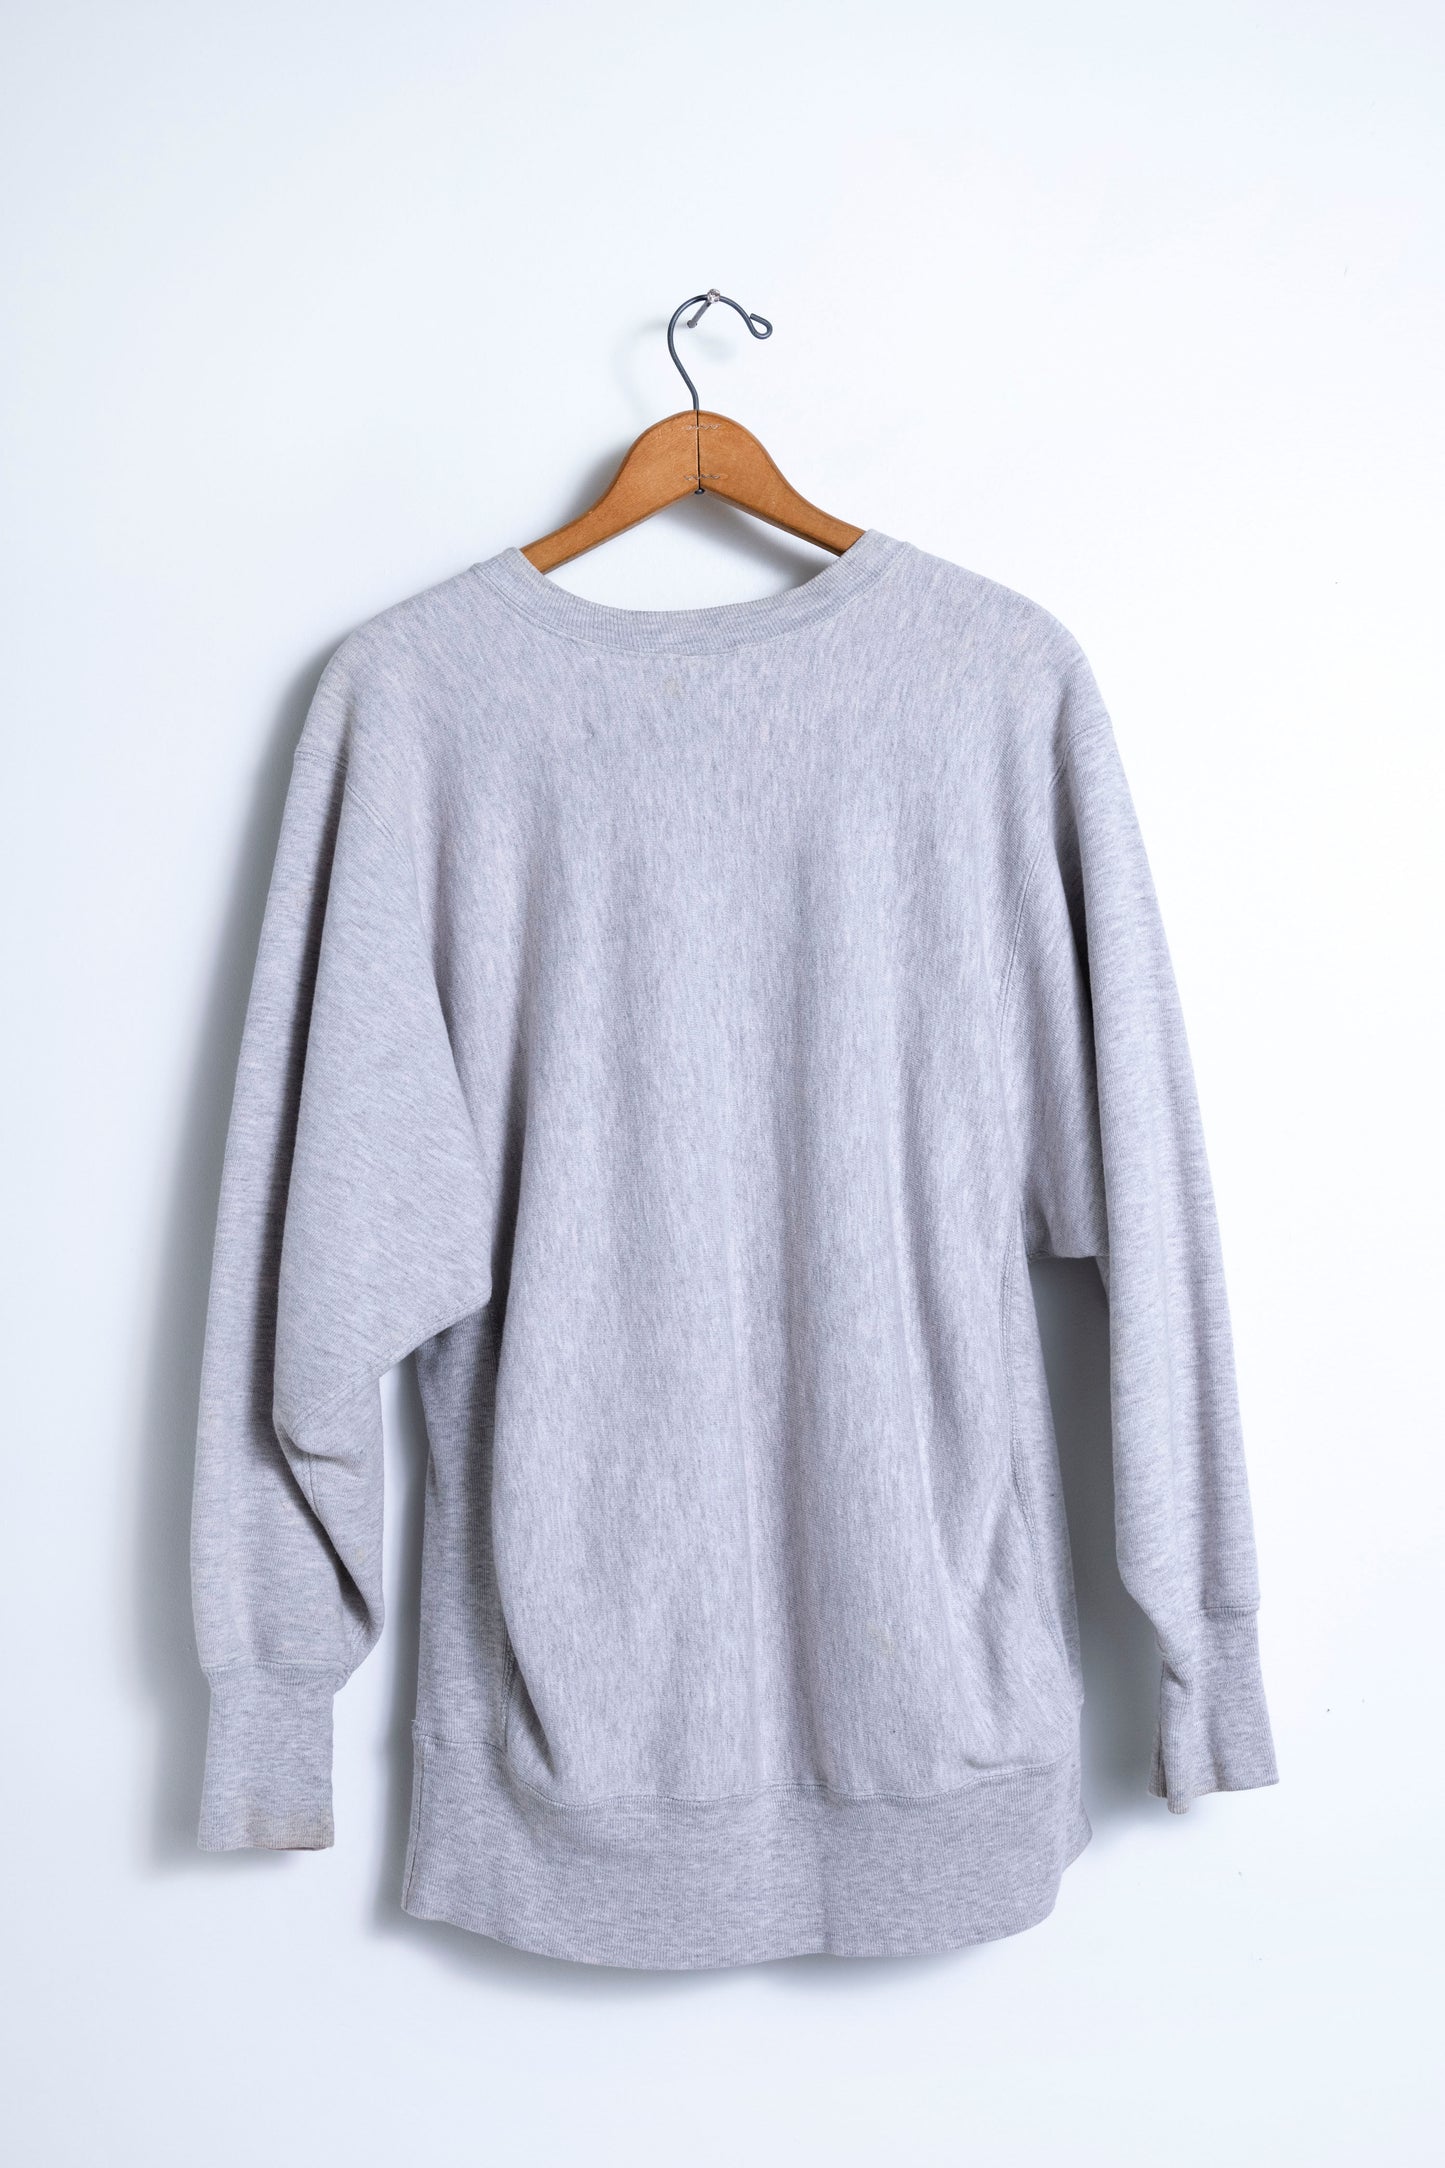 "Pearlie Charlie" Le Moyne College Sweatshirt - Grey/Pearl